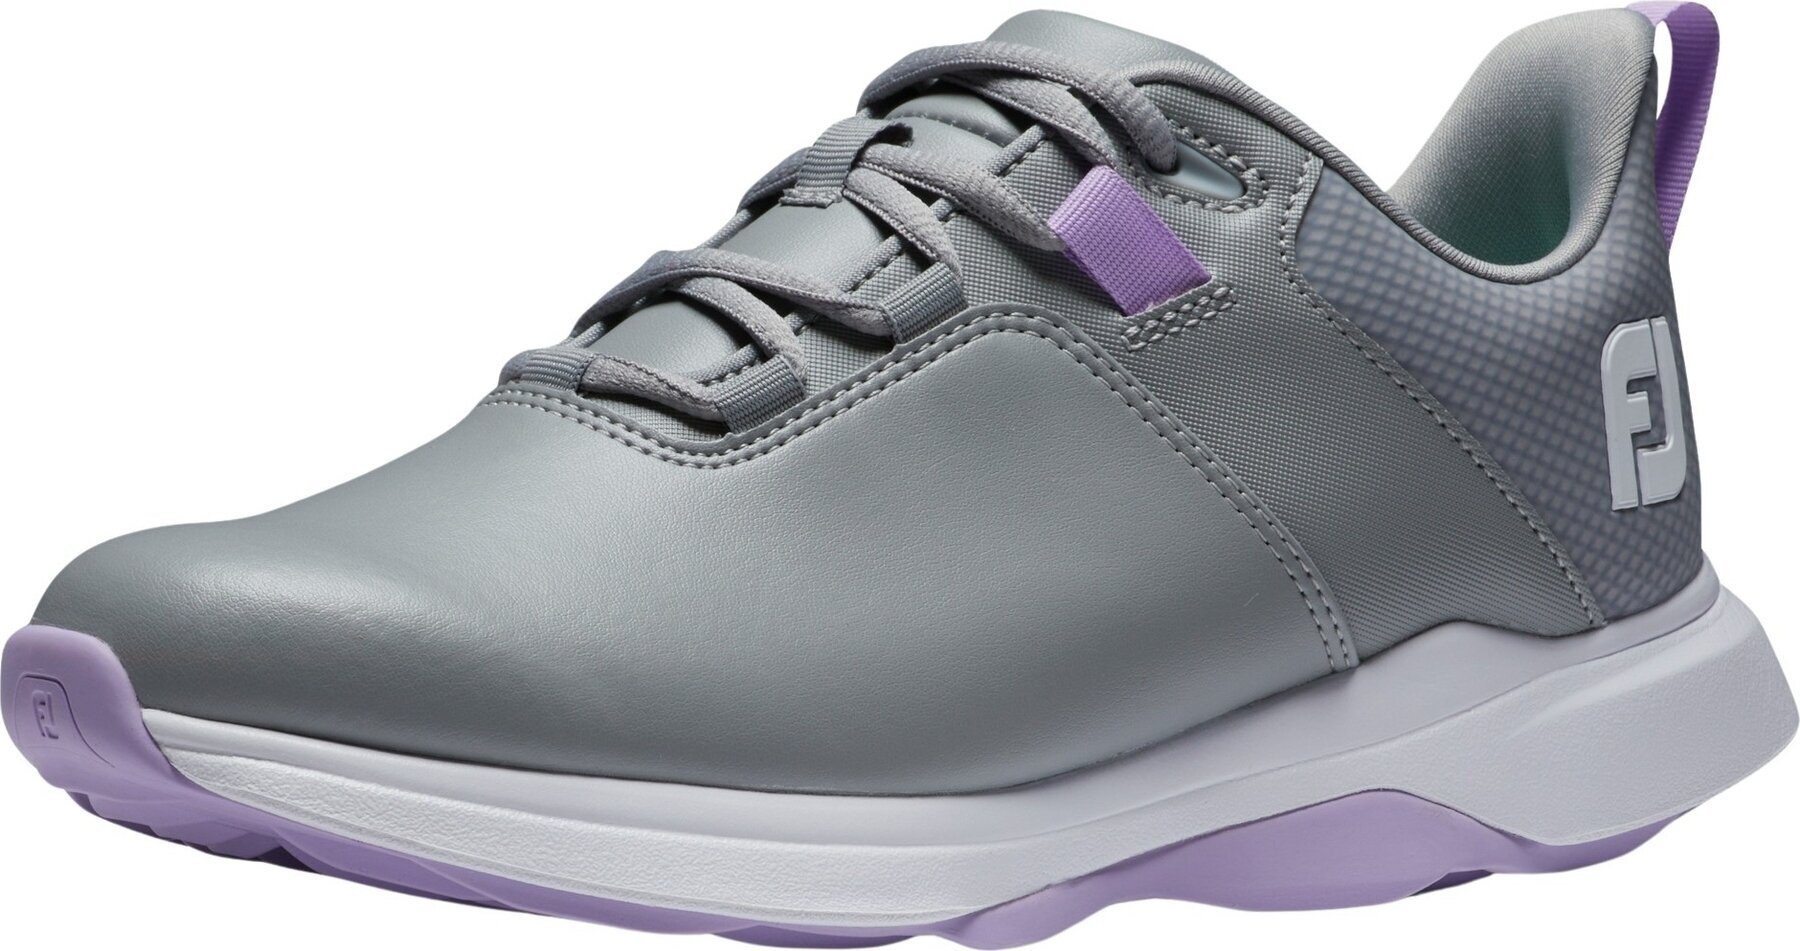 Chaussures de golf pour femmes Footjoy ProLite Womens Golf Shoes Grey/Lilac 40,5